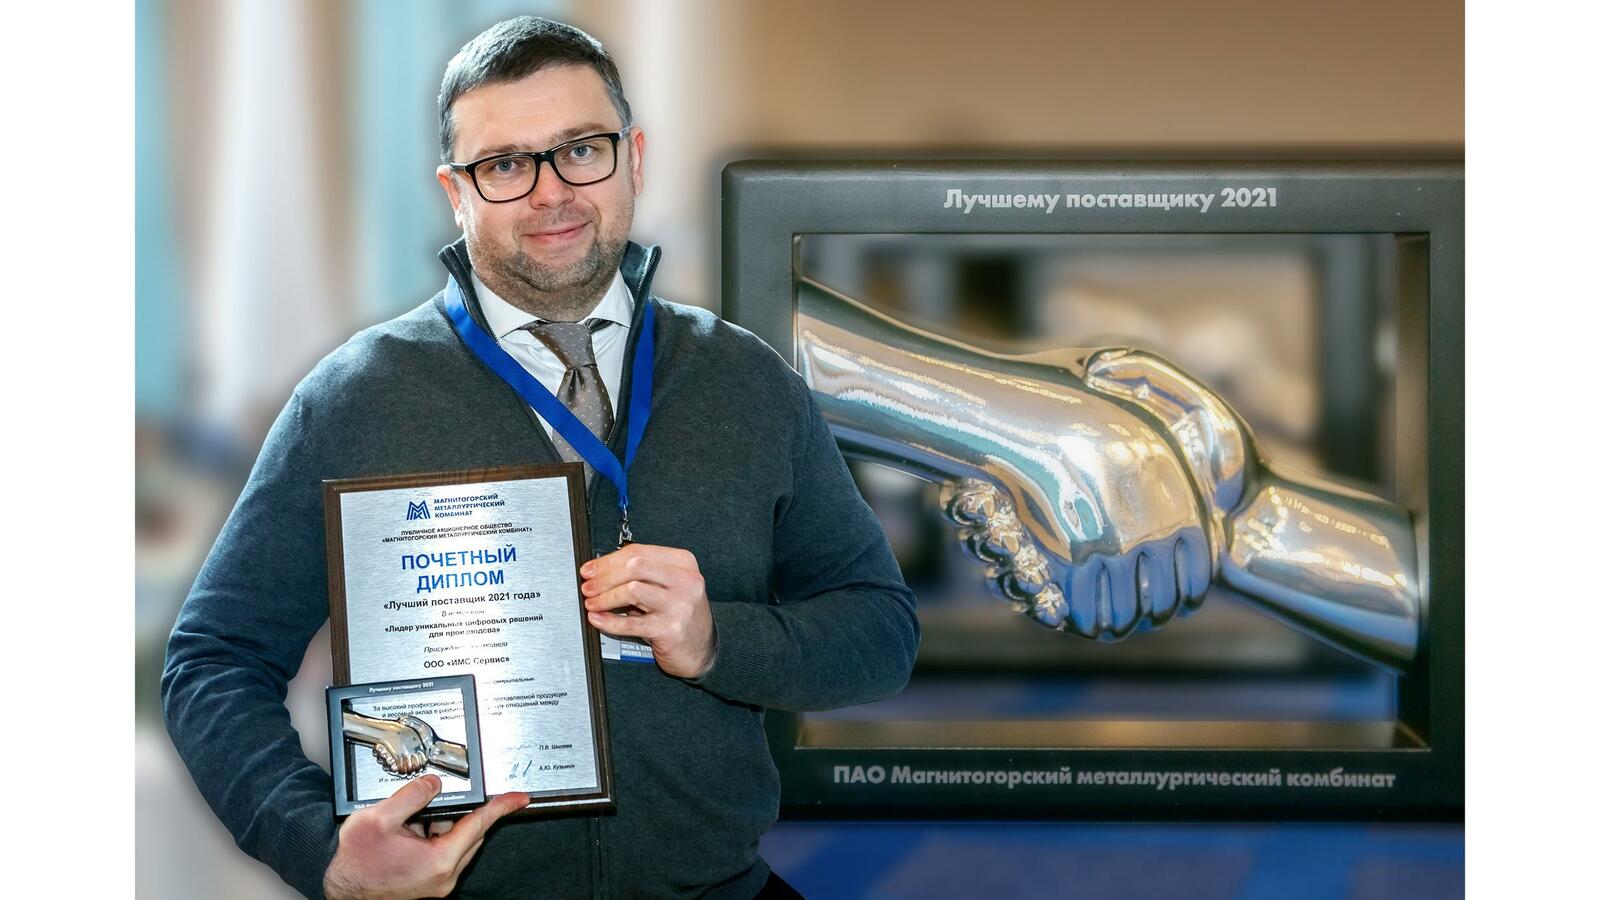 Alexander Radaev, IMS Service LLC, nimmt stolz den Preis als "Best Supplier 2021" der Firma Magnitogorsker Metallurgisches Kombinat (MMK) entgegen.